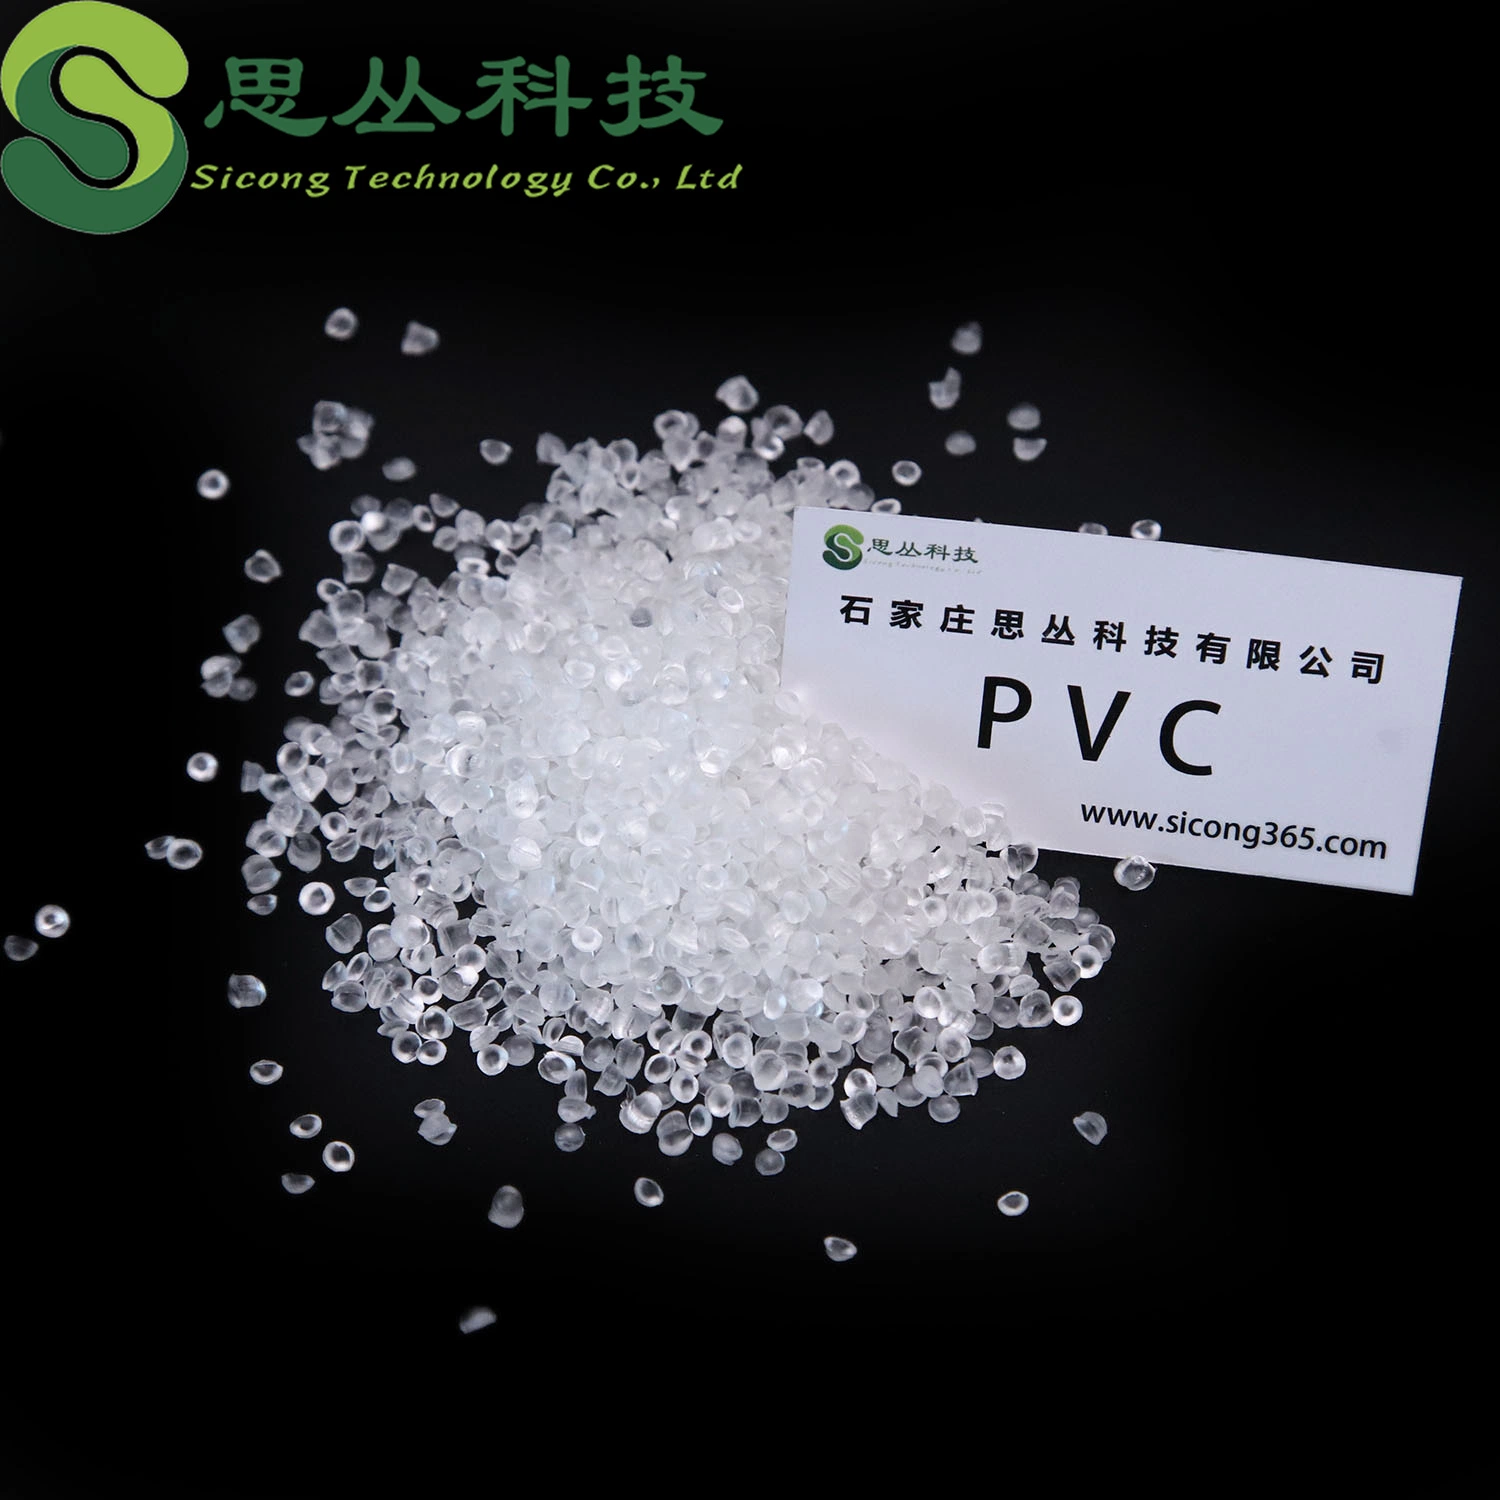 PVC transparente material para gafas de seguridad PVC transparente material con Un fondo transparente alto